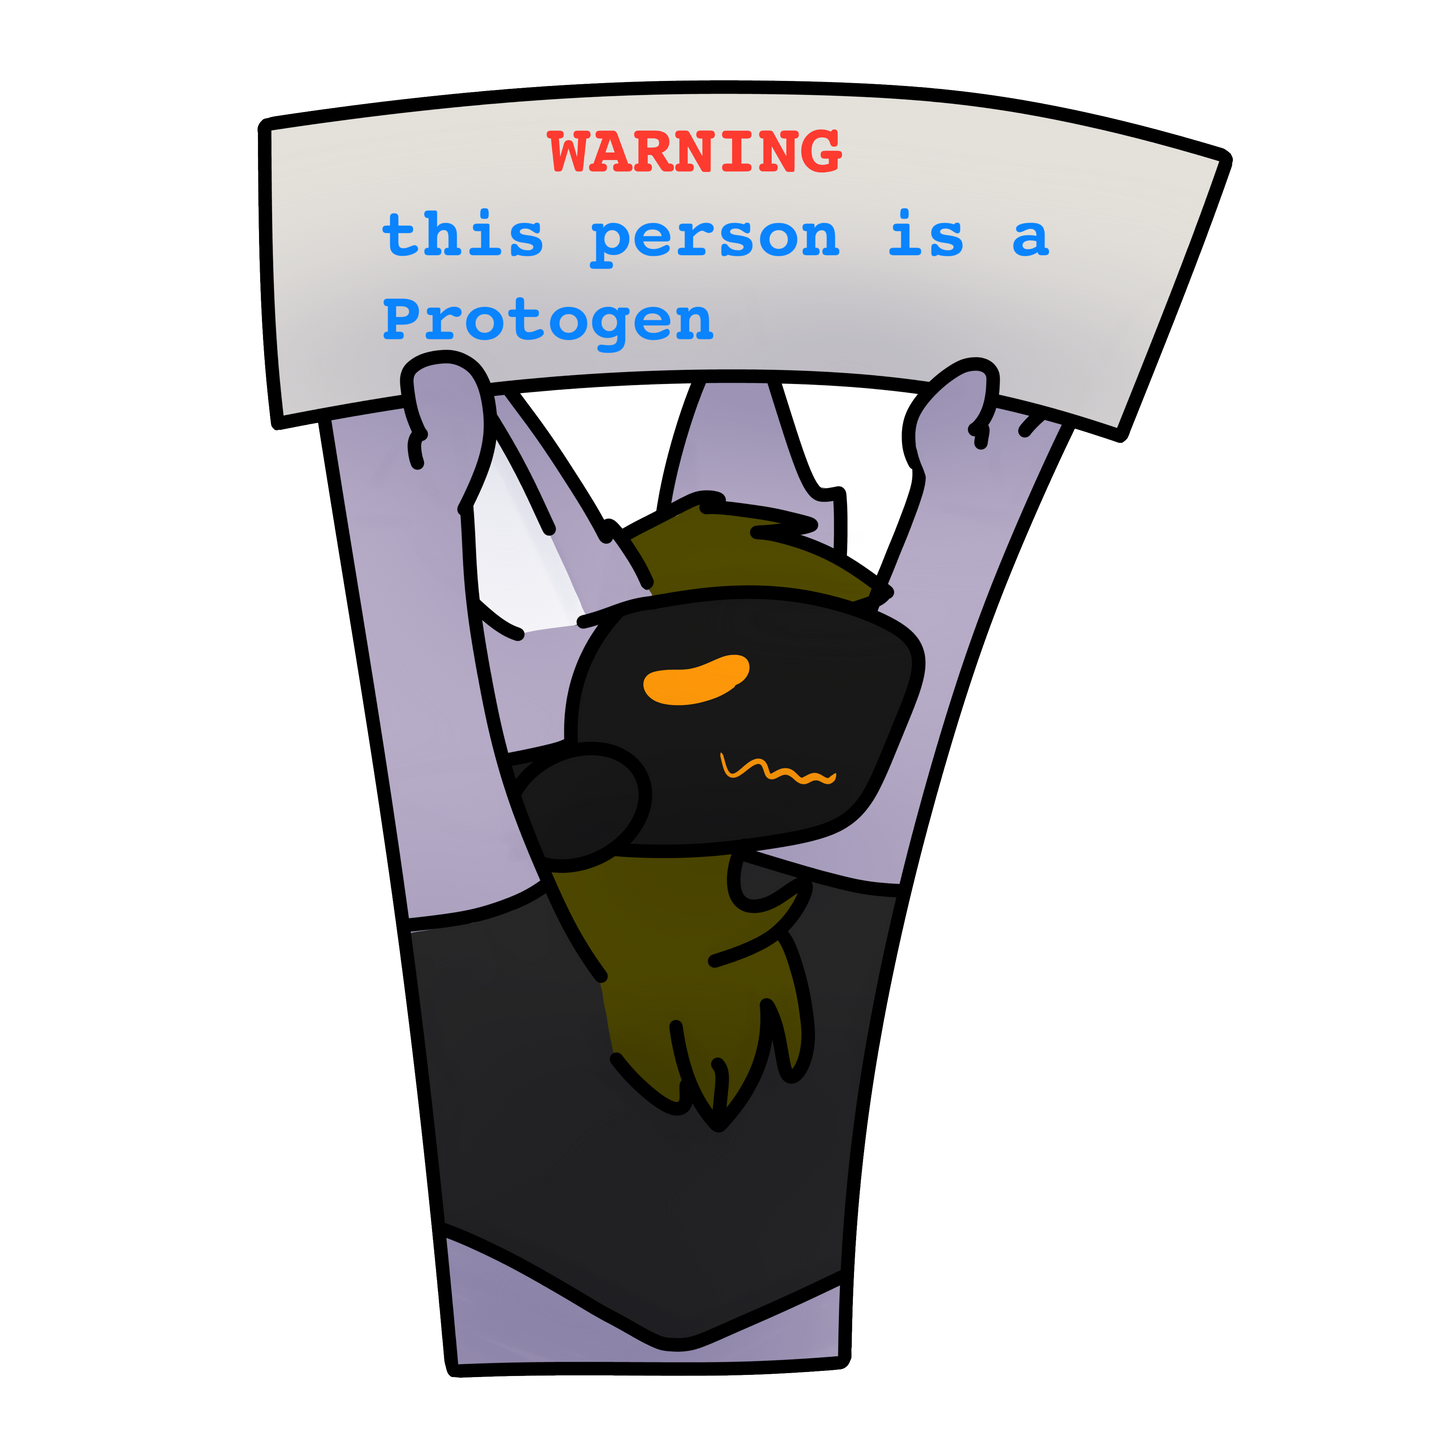 Protogen Warning Sticker